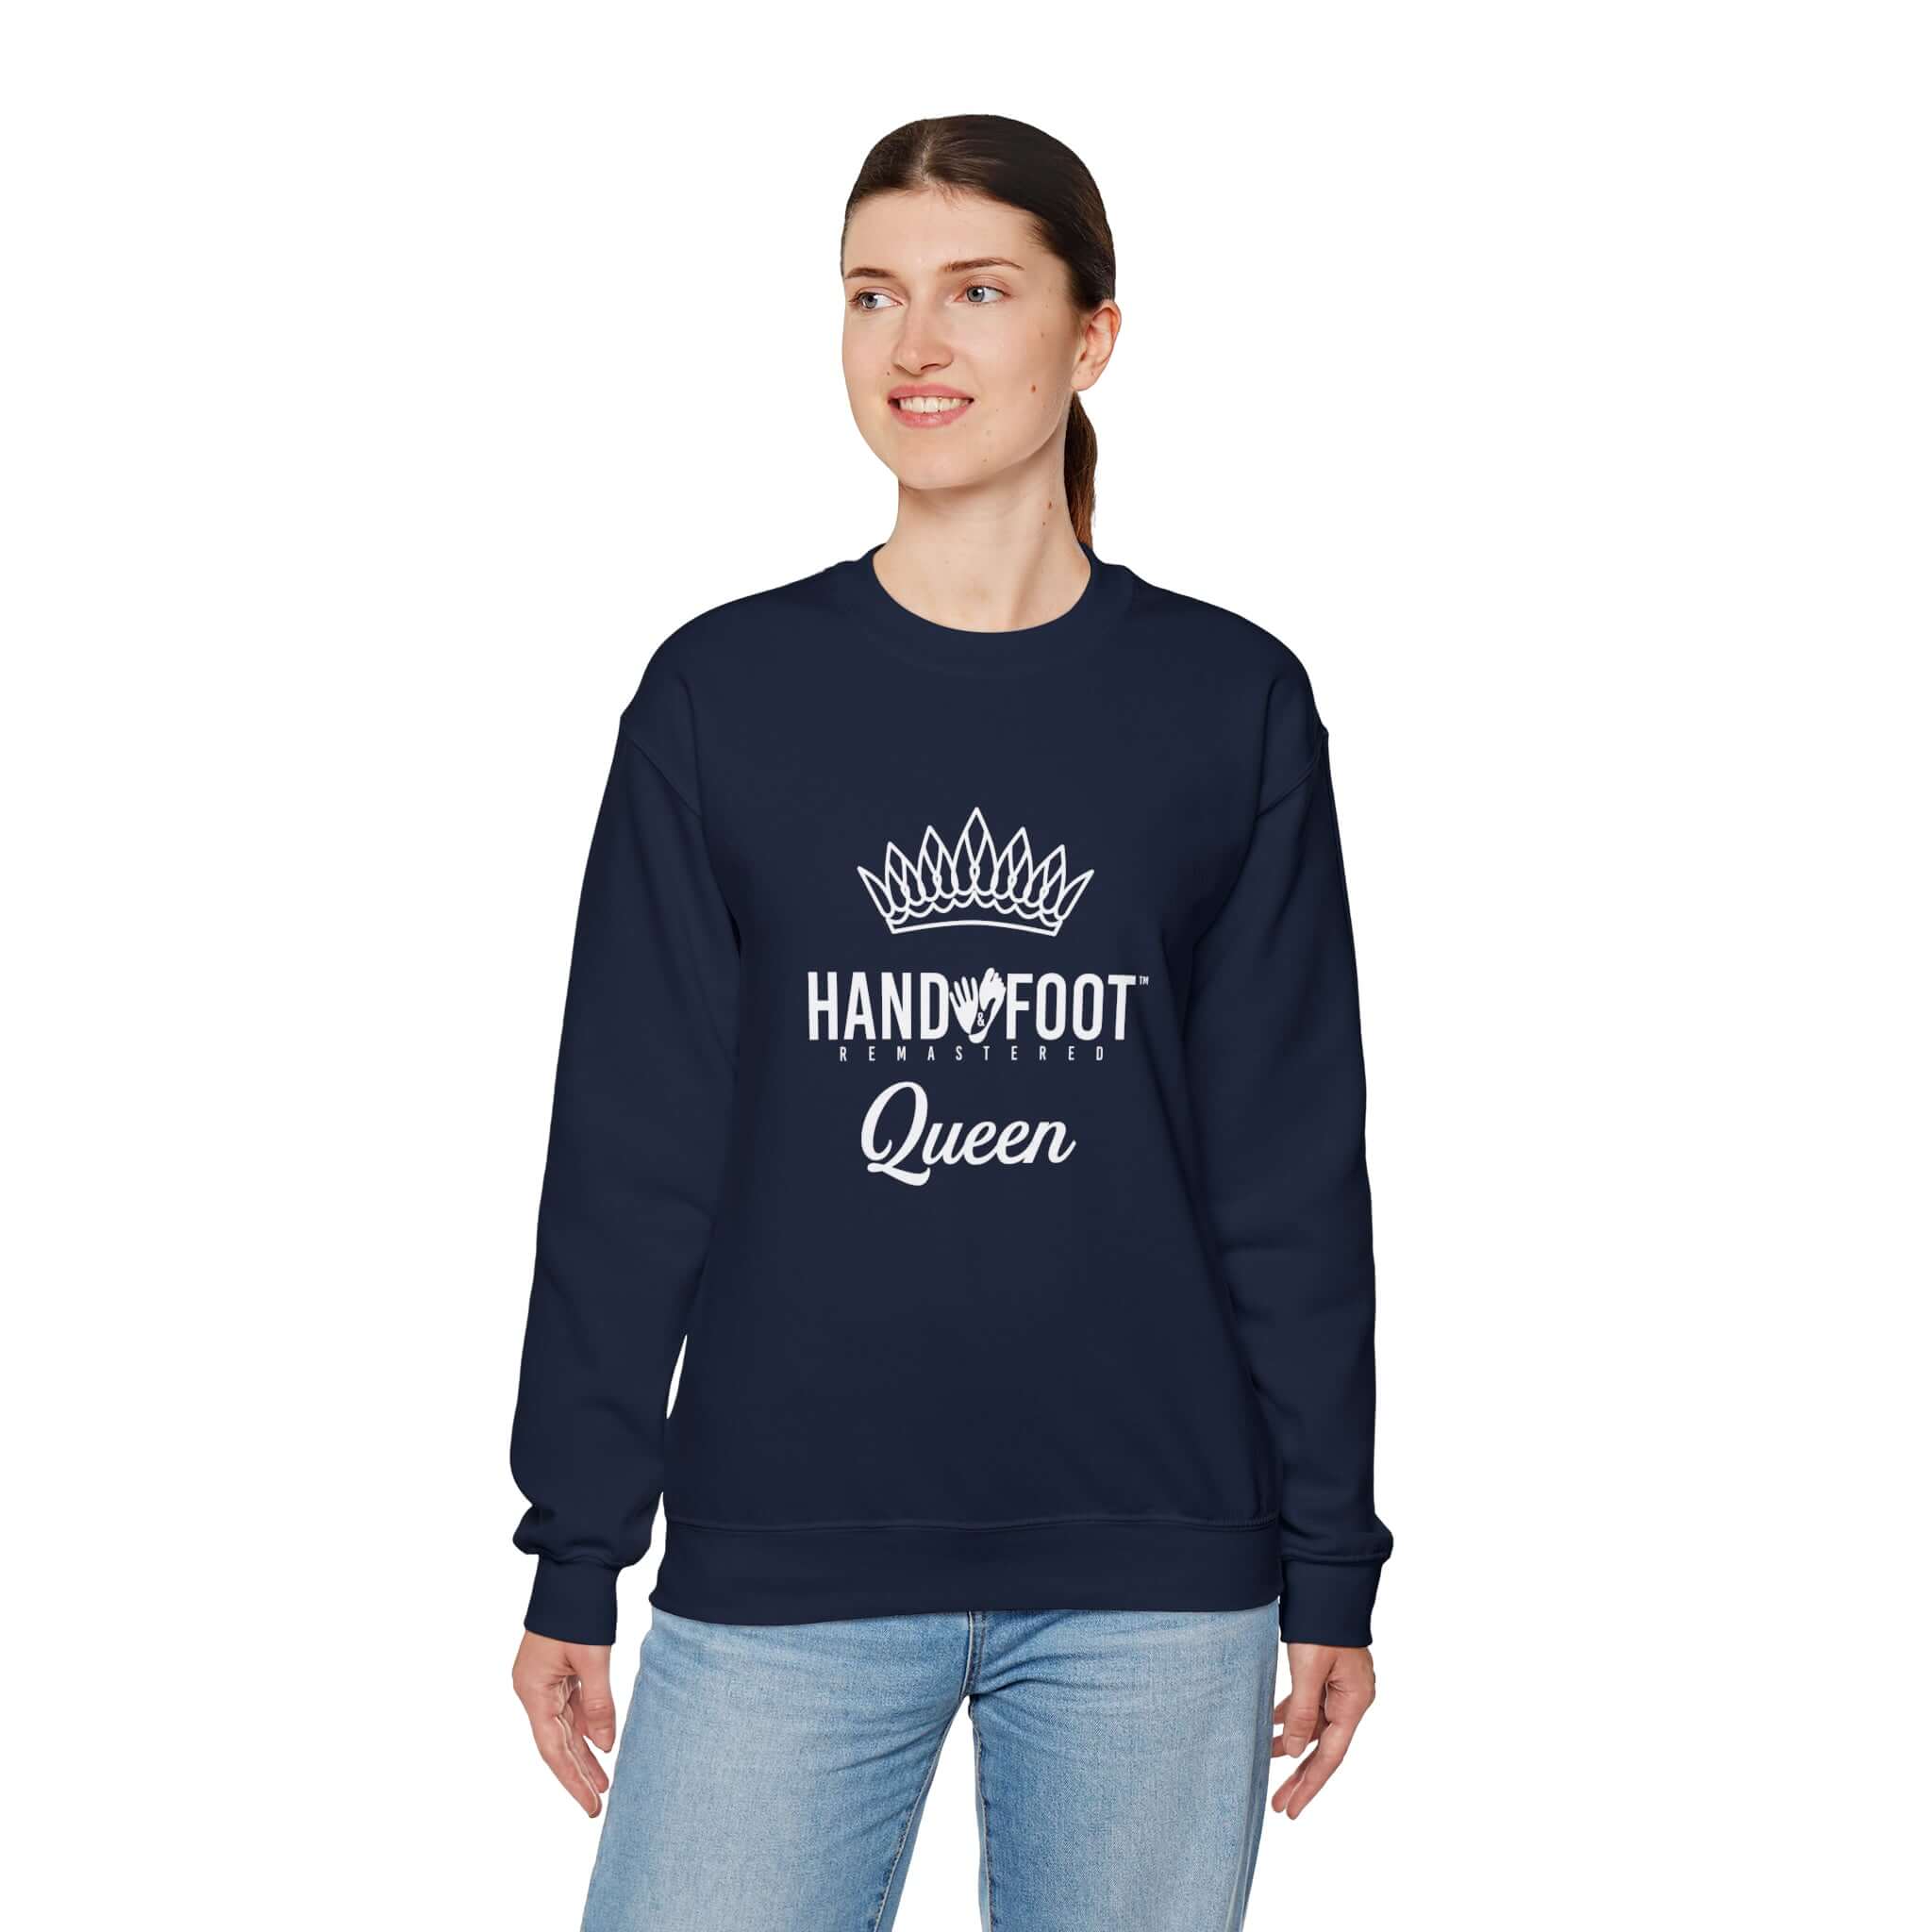 Hand & Foot Queen Unisex Heavy Blend™ Crewneck Sweatshirt